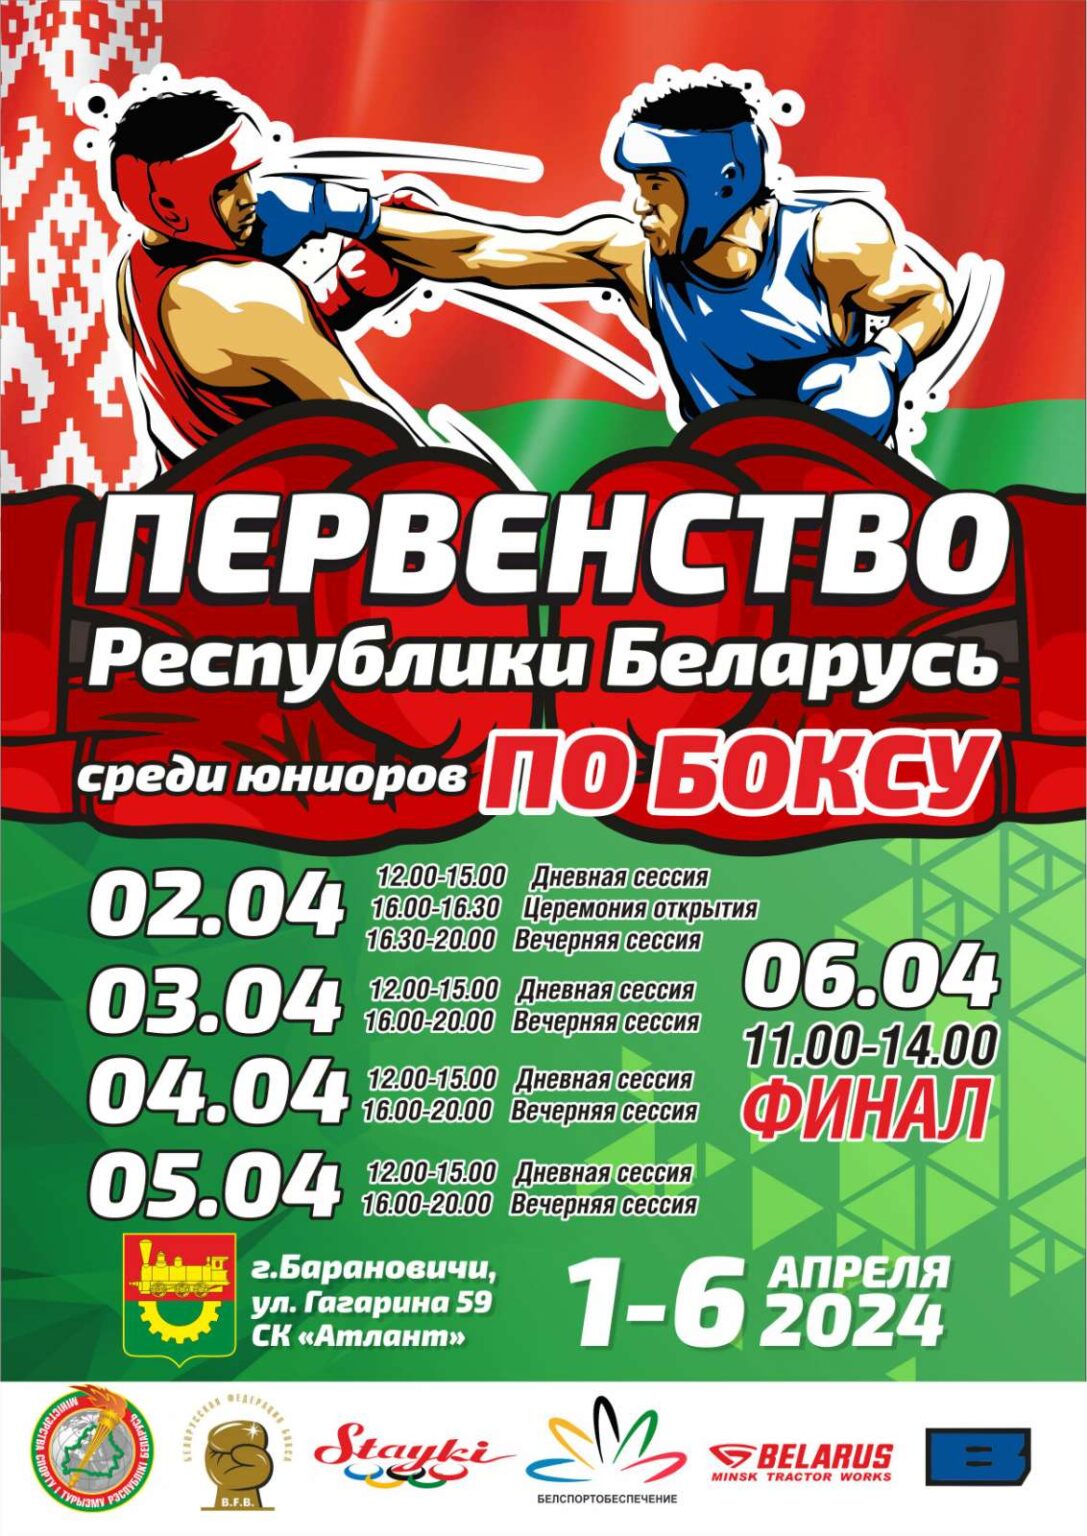 Первенство Республики Беларусь по боксу среди юниоров 2008-2009 г.г.р.